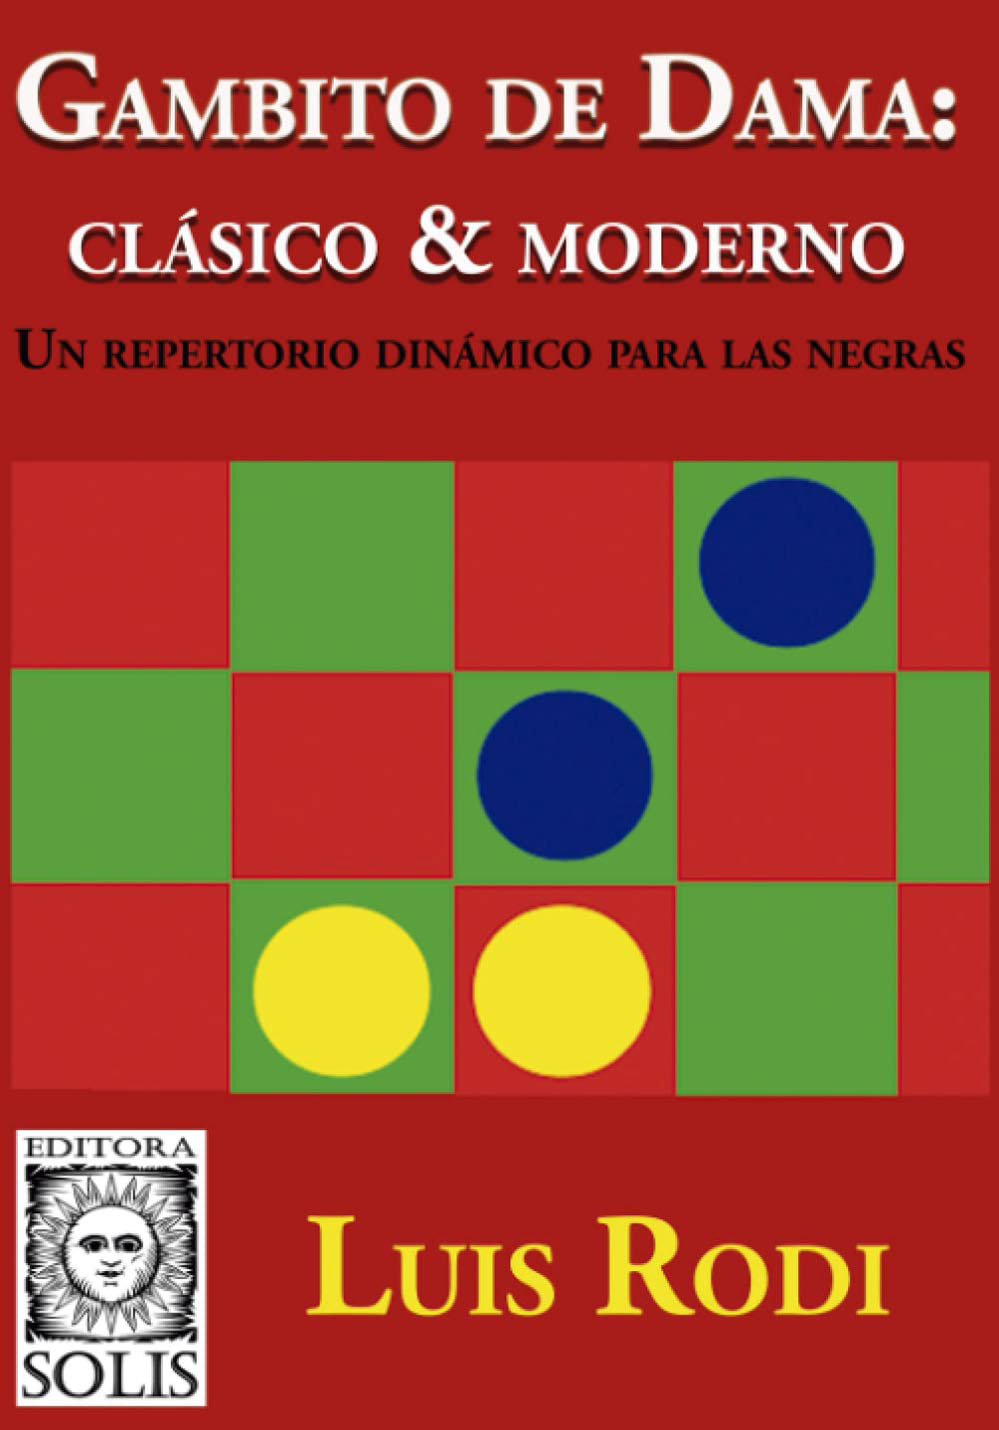 Gambito de dama: Clásico & moderno. 9788598628578